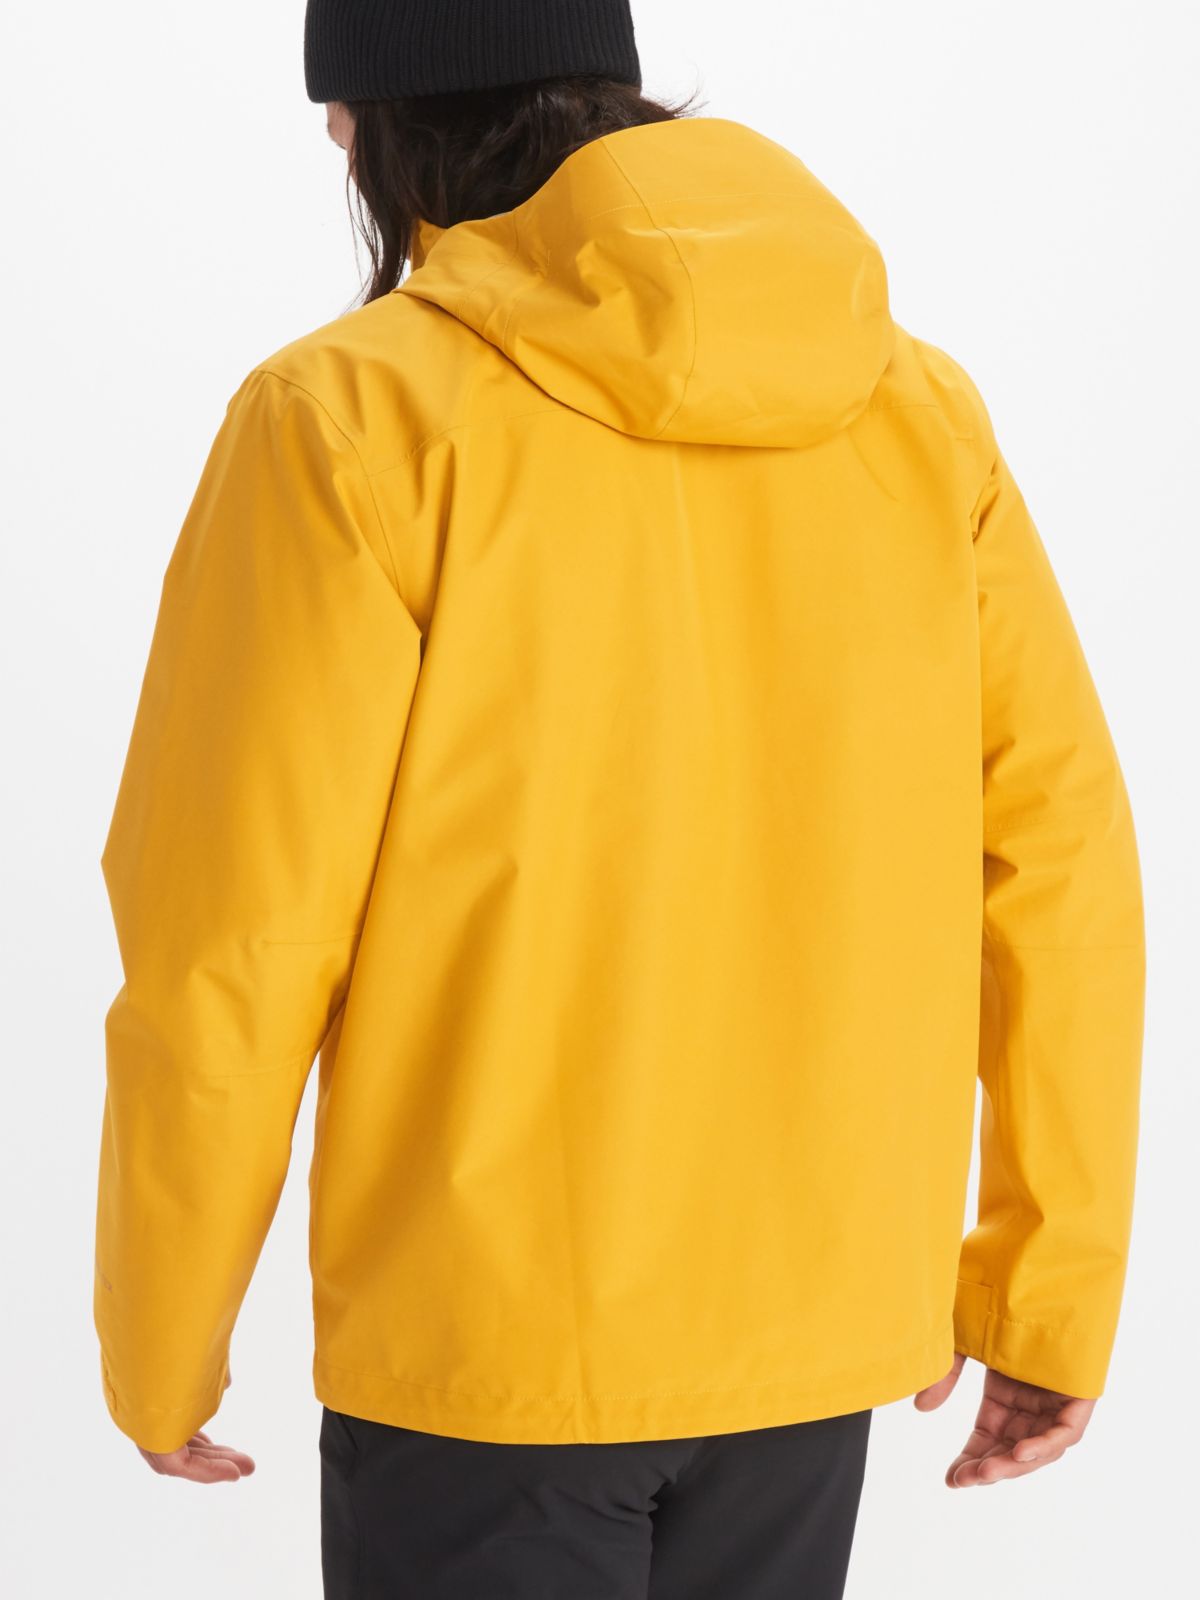 Model in Marmot men's rainwear in yellow with hood